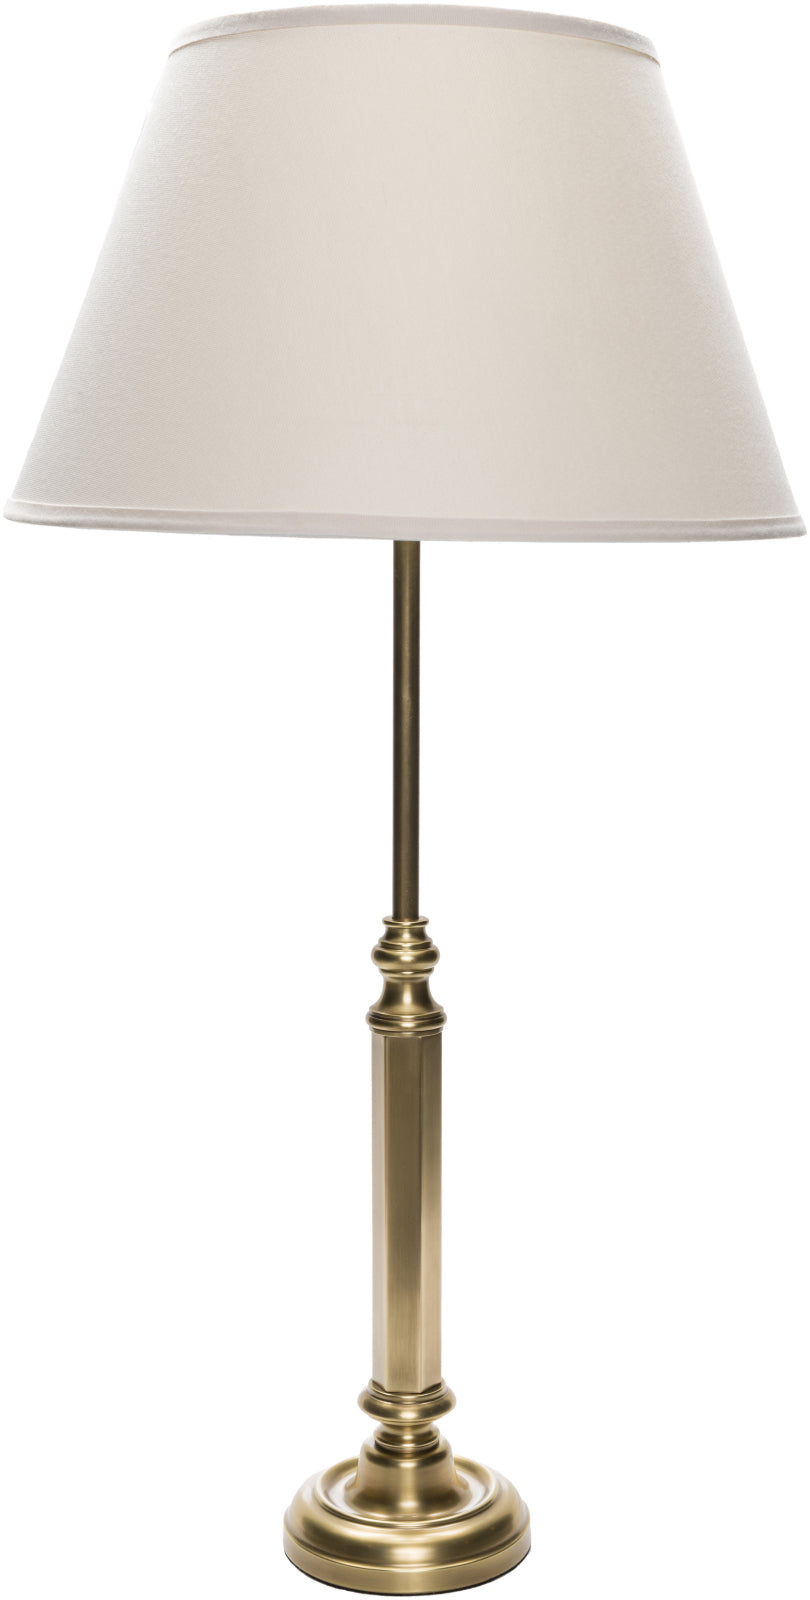 Surya Norris NRS-330 Lamp Table Lamp